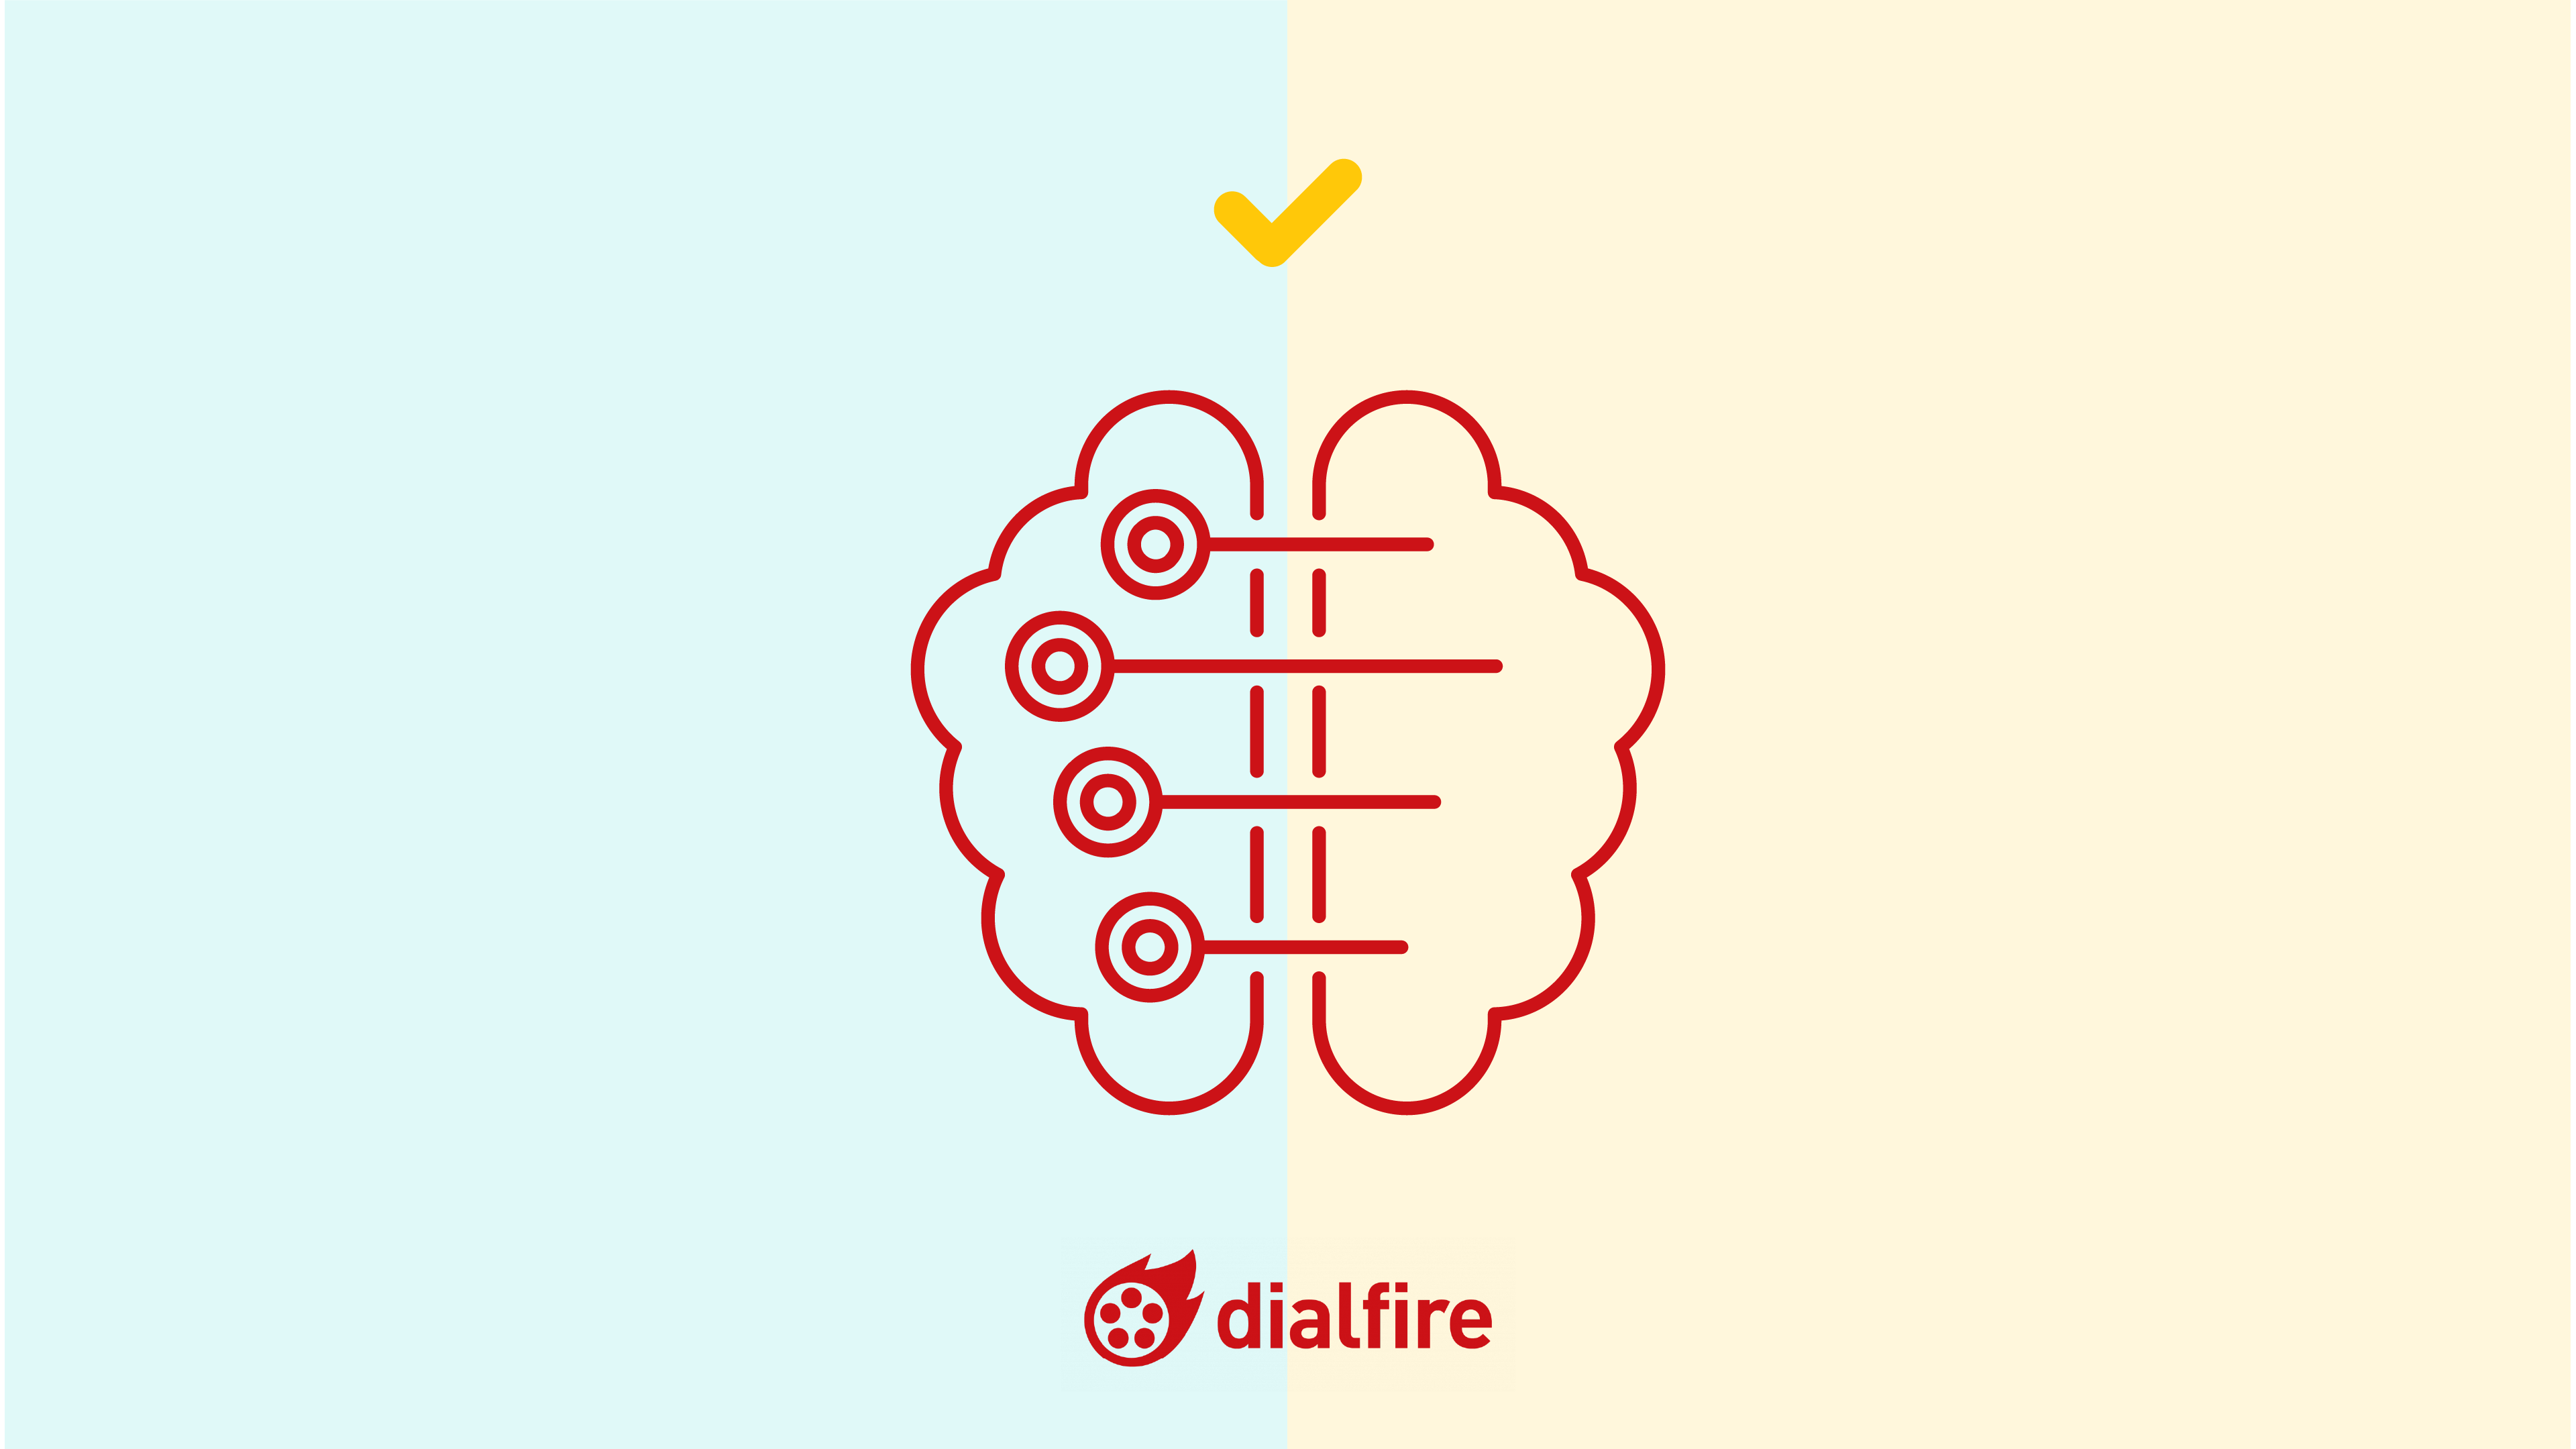 Auf der Graphik sind zwei Symbole für Künstliche Intelligenz abgebildet, die miteinander verbunden und oberhalb von einem gelben Haken sowie unterhalb von dem Dialfire Logo eingecshlossen sind.